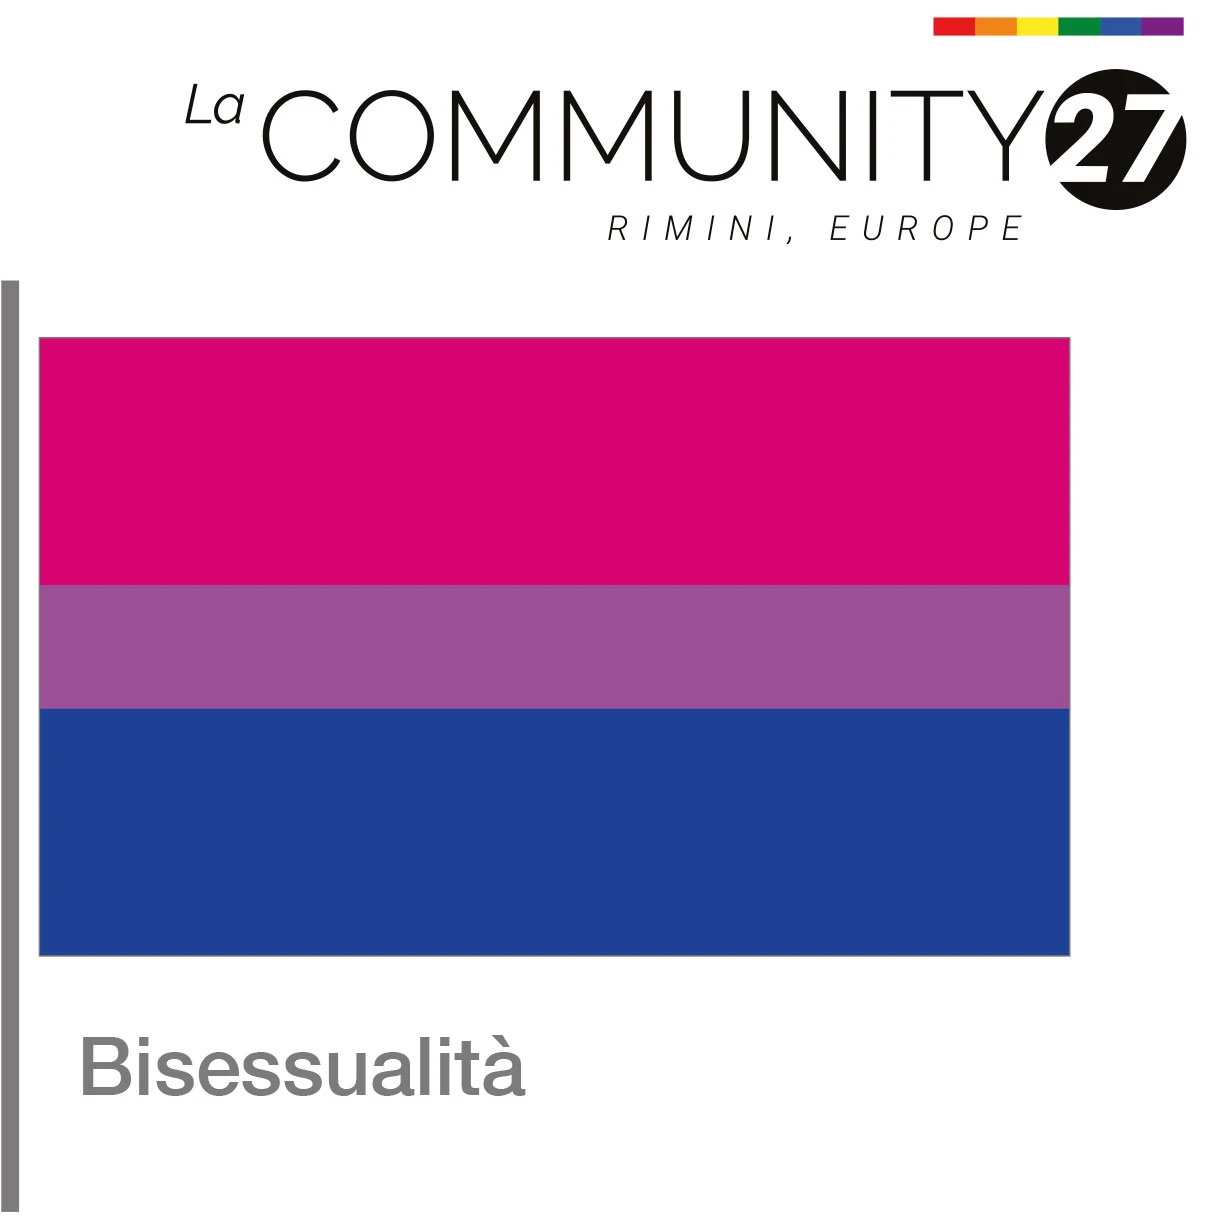 Bisessualità - bandiera LGBTQ in uso - La Communty 27